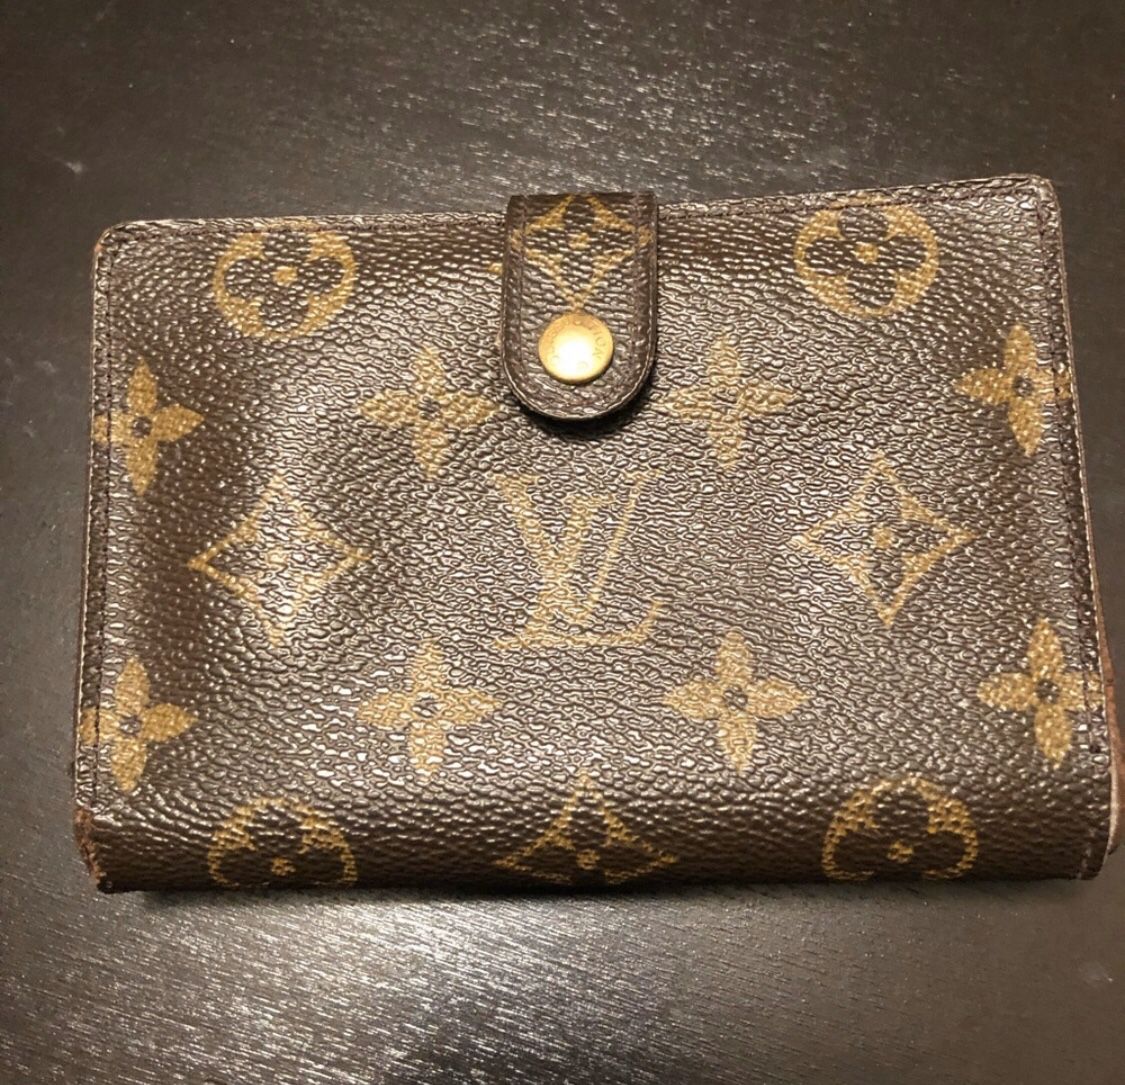 Authentic Louis Vuitton wallet